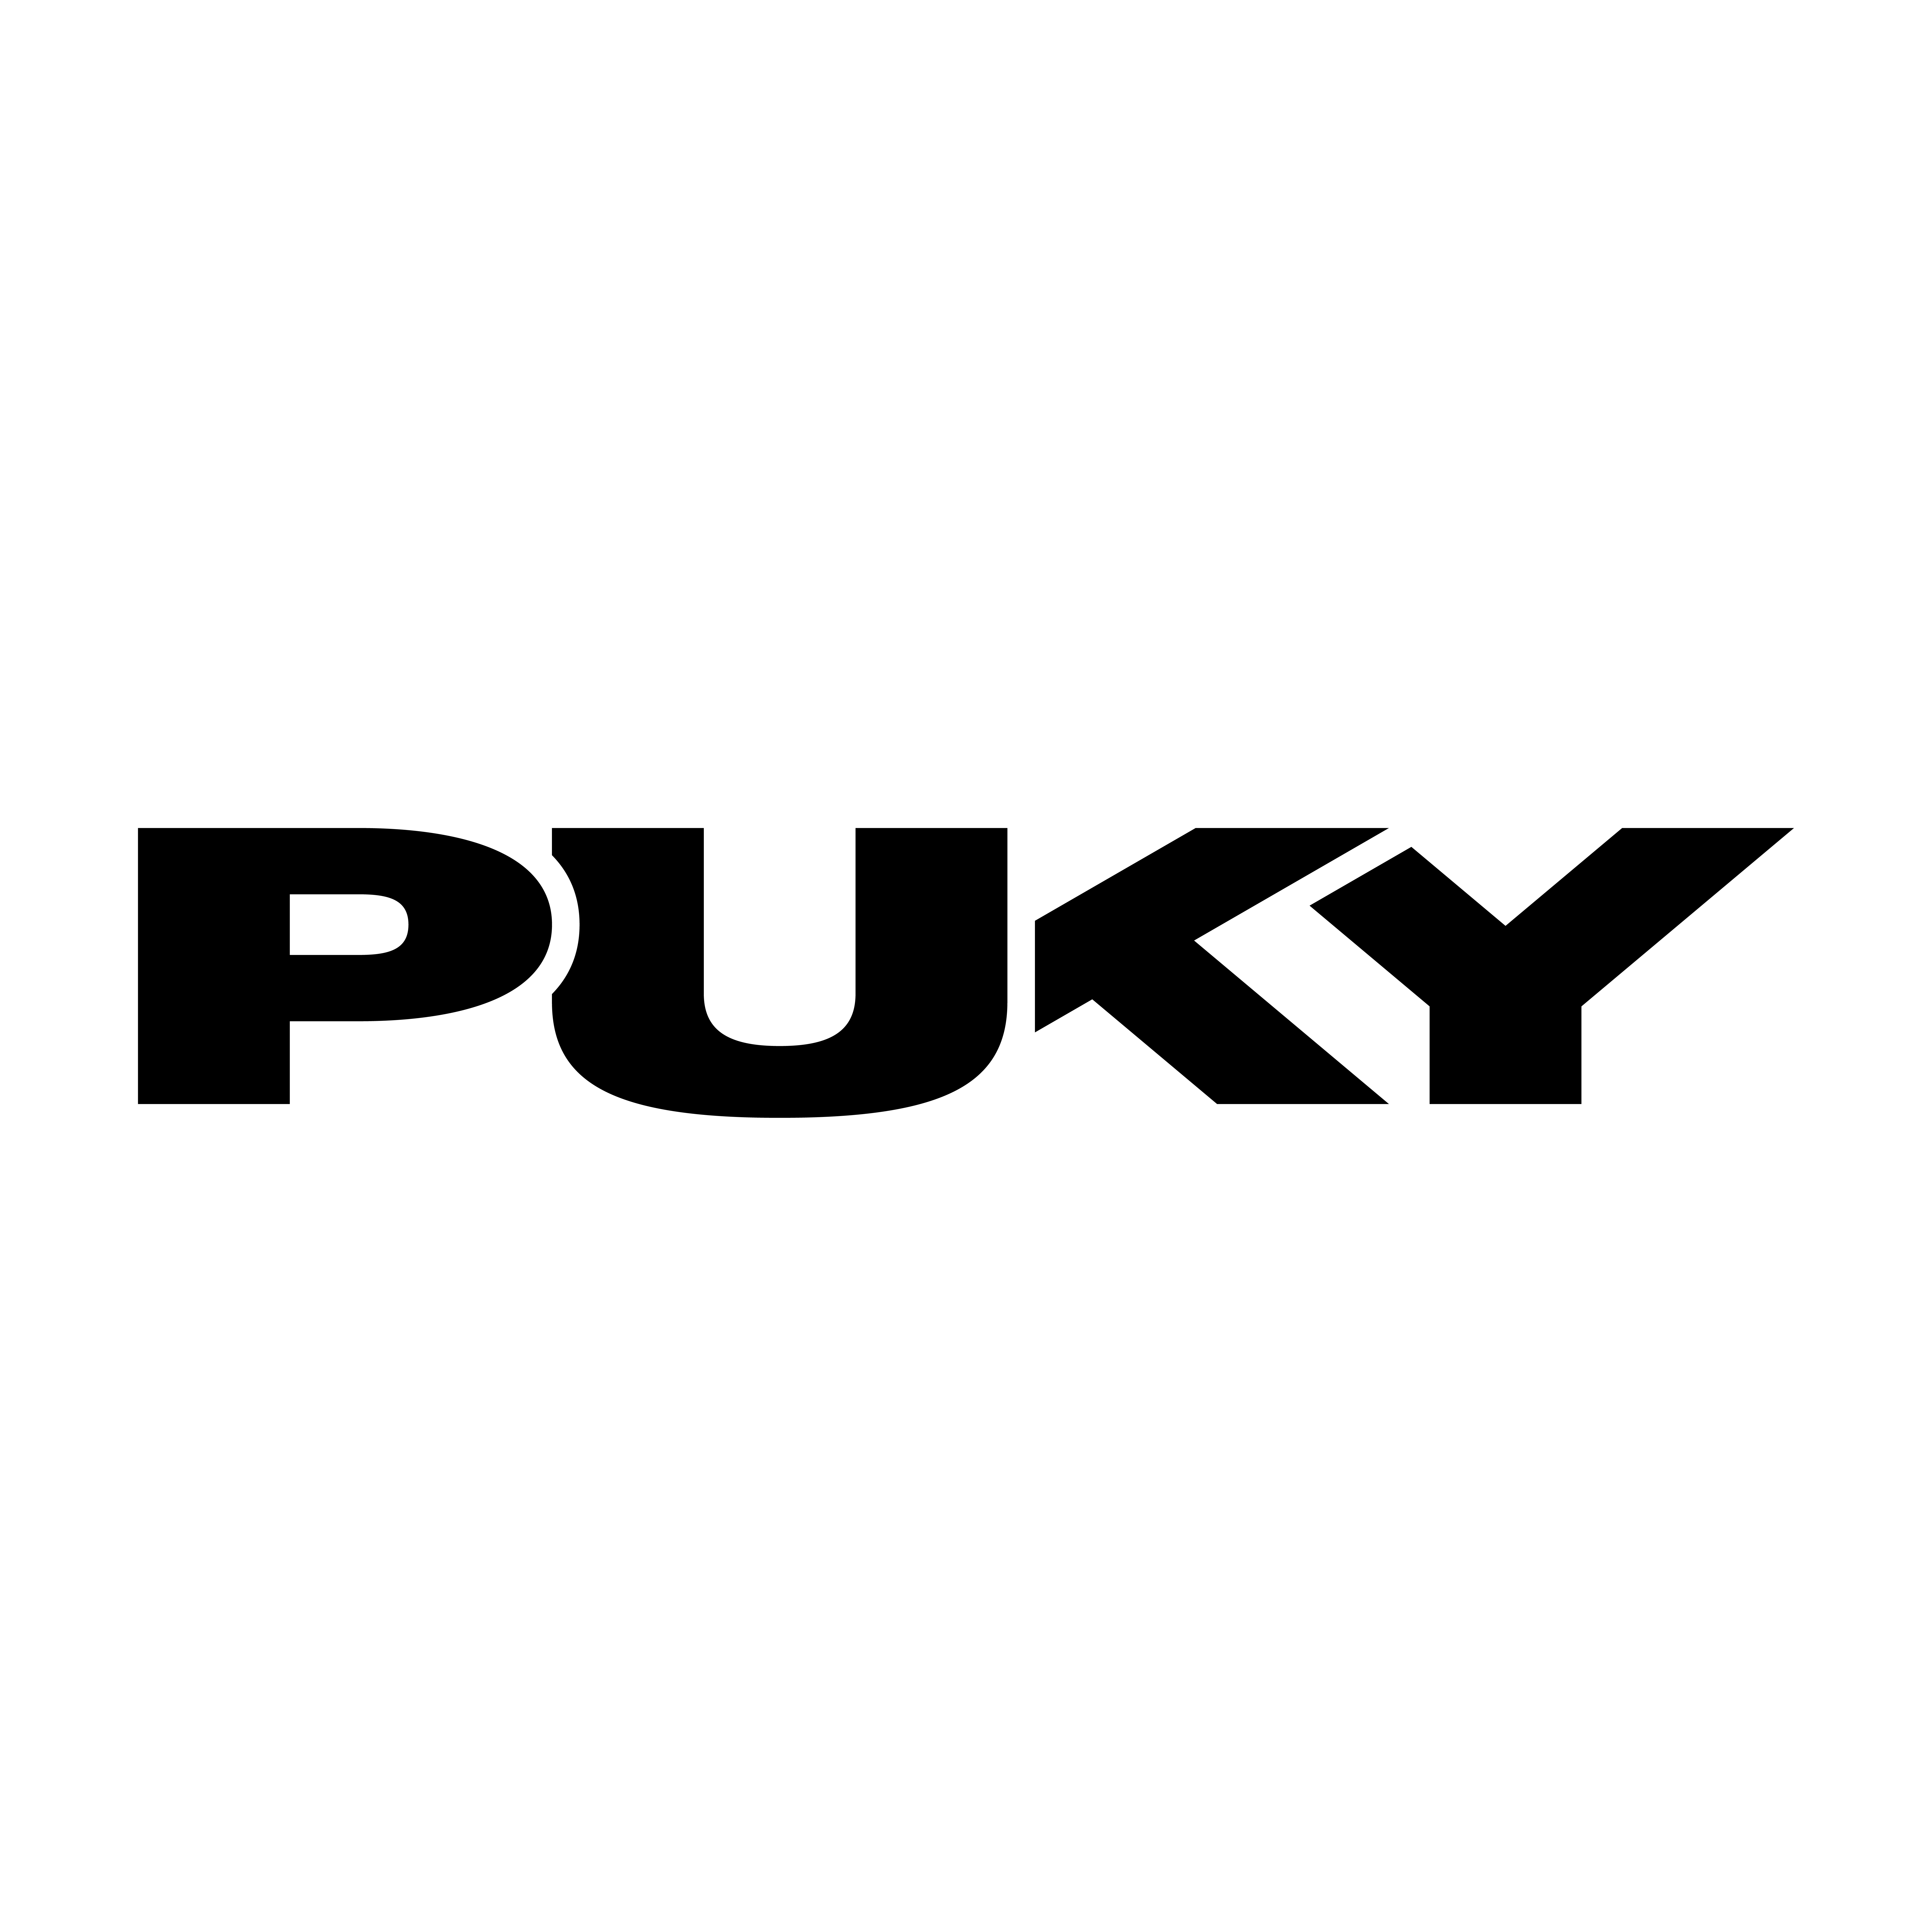 PUKY GmbH & Co. KG